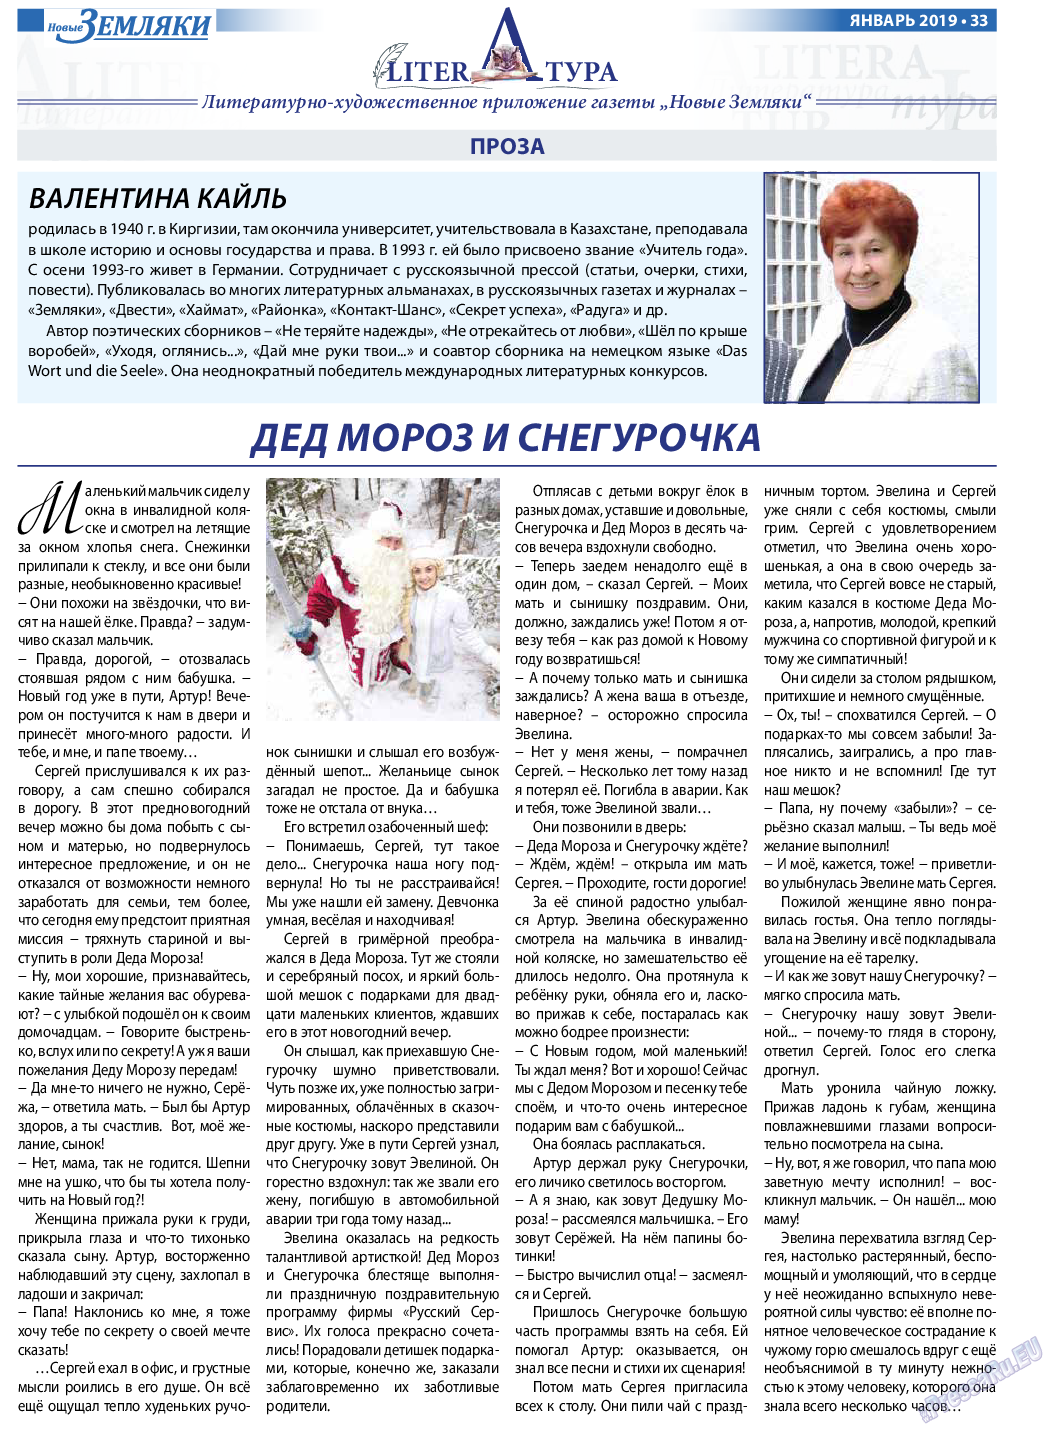 Новые Земляки, газета. 2019 №1 стр.33